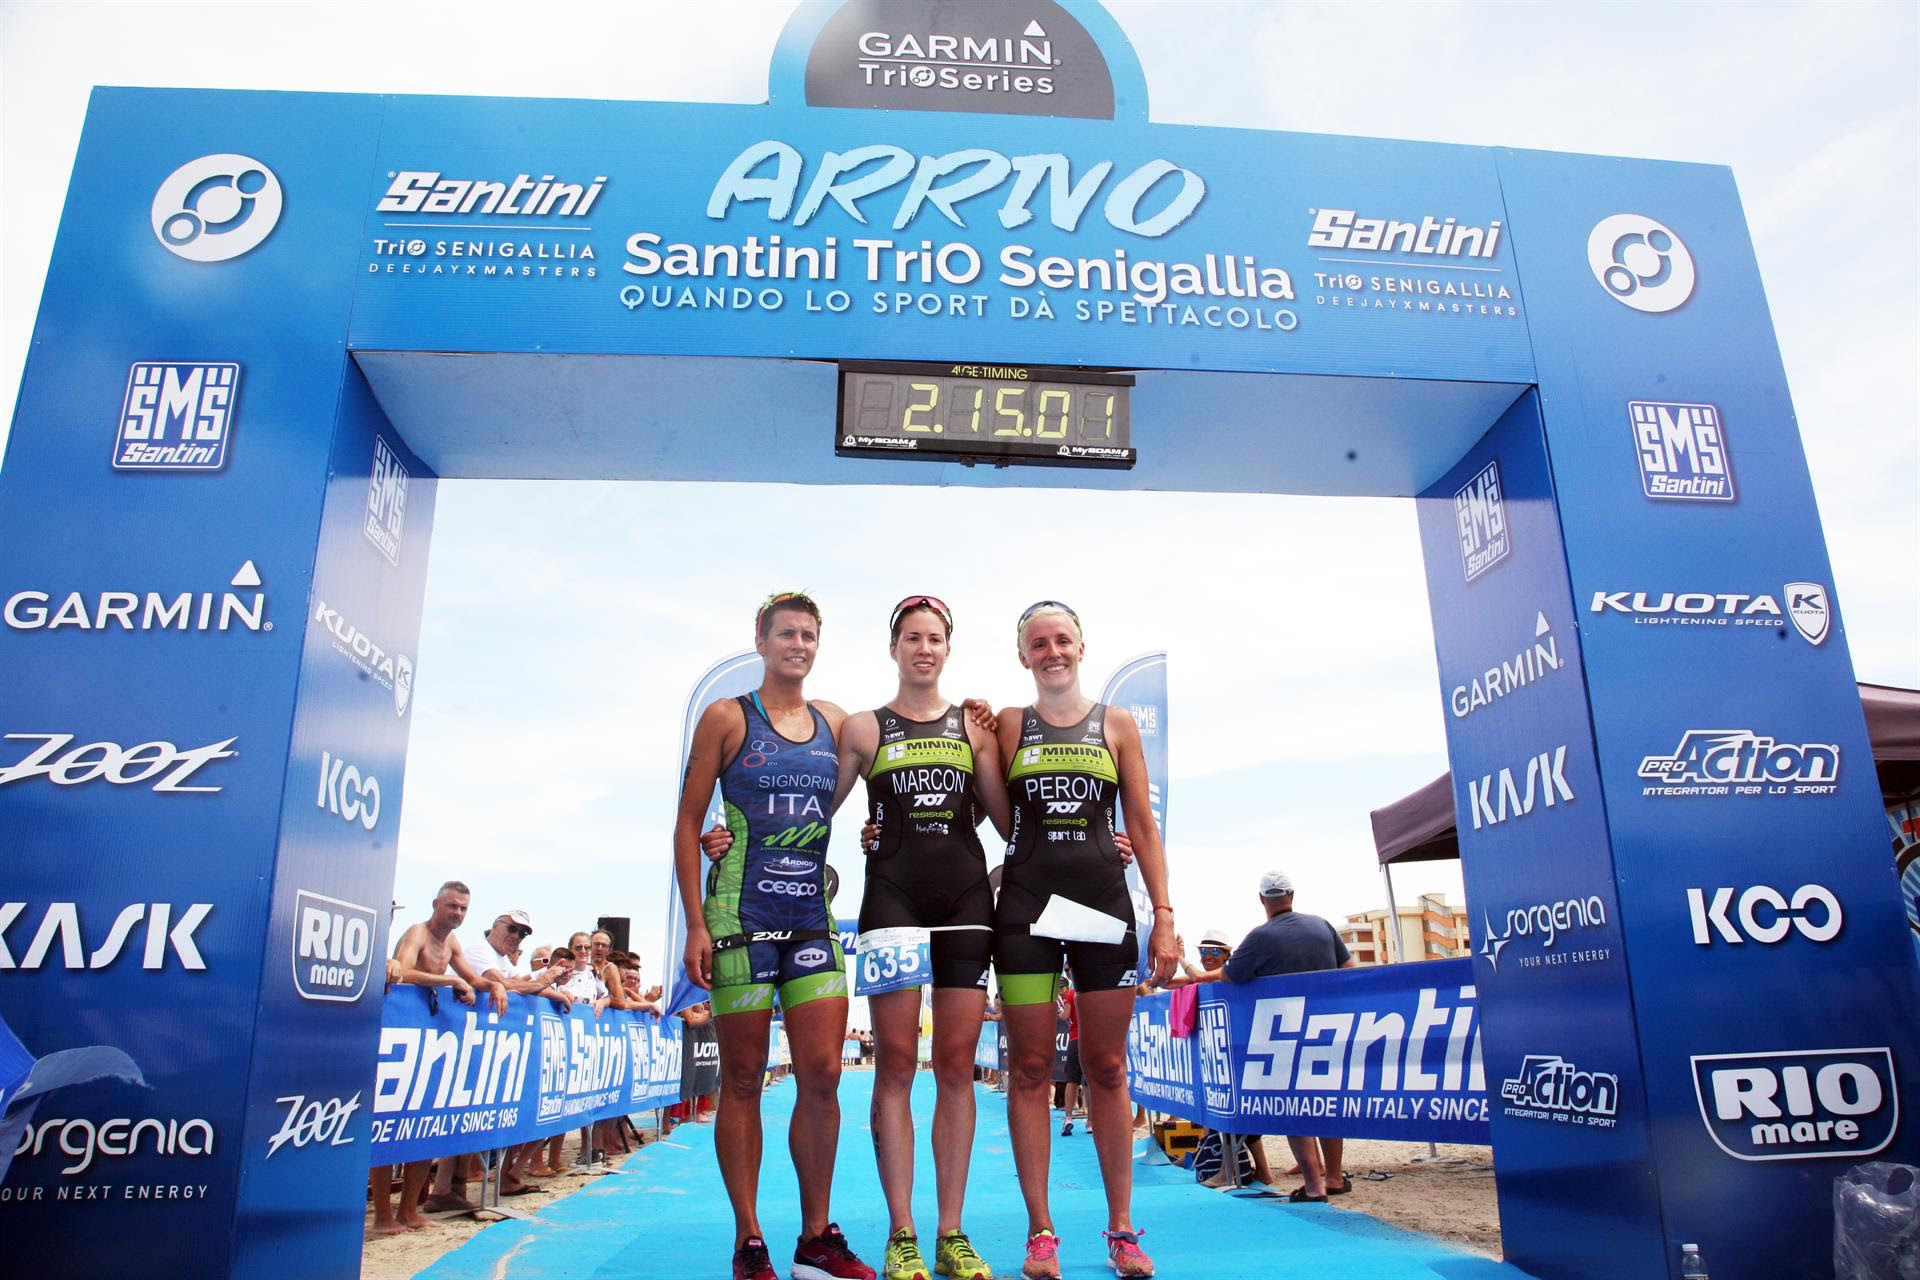 Santini TriO Senigallia - Garmin TriO Series Olimpico